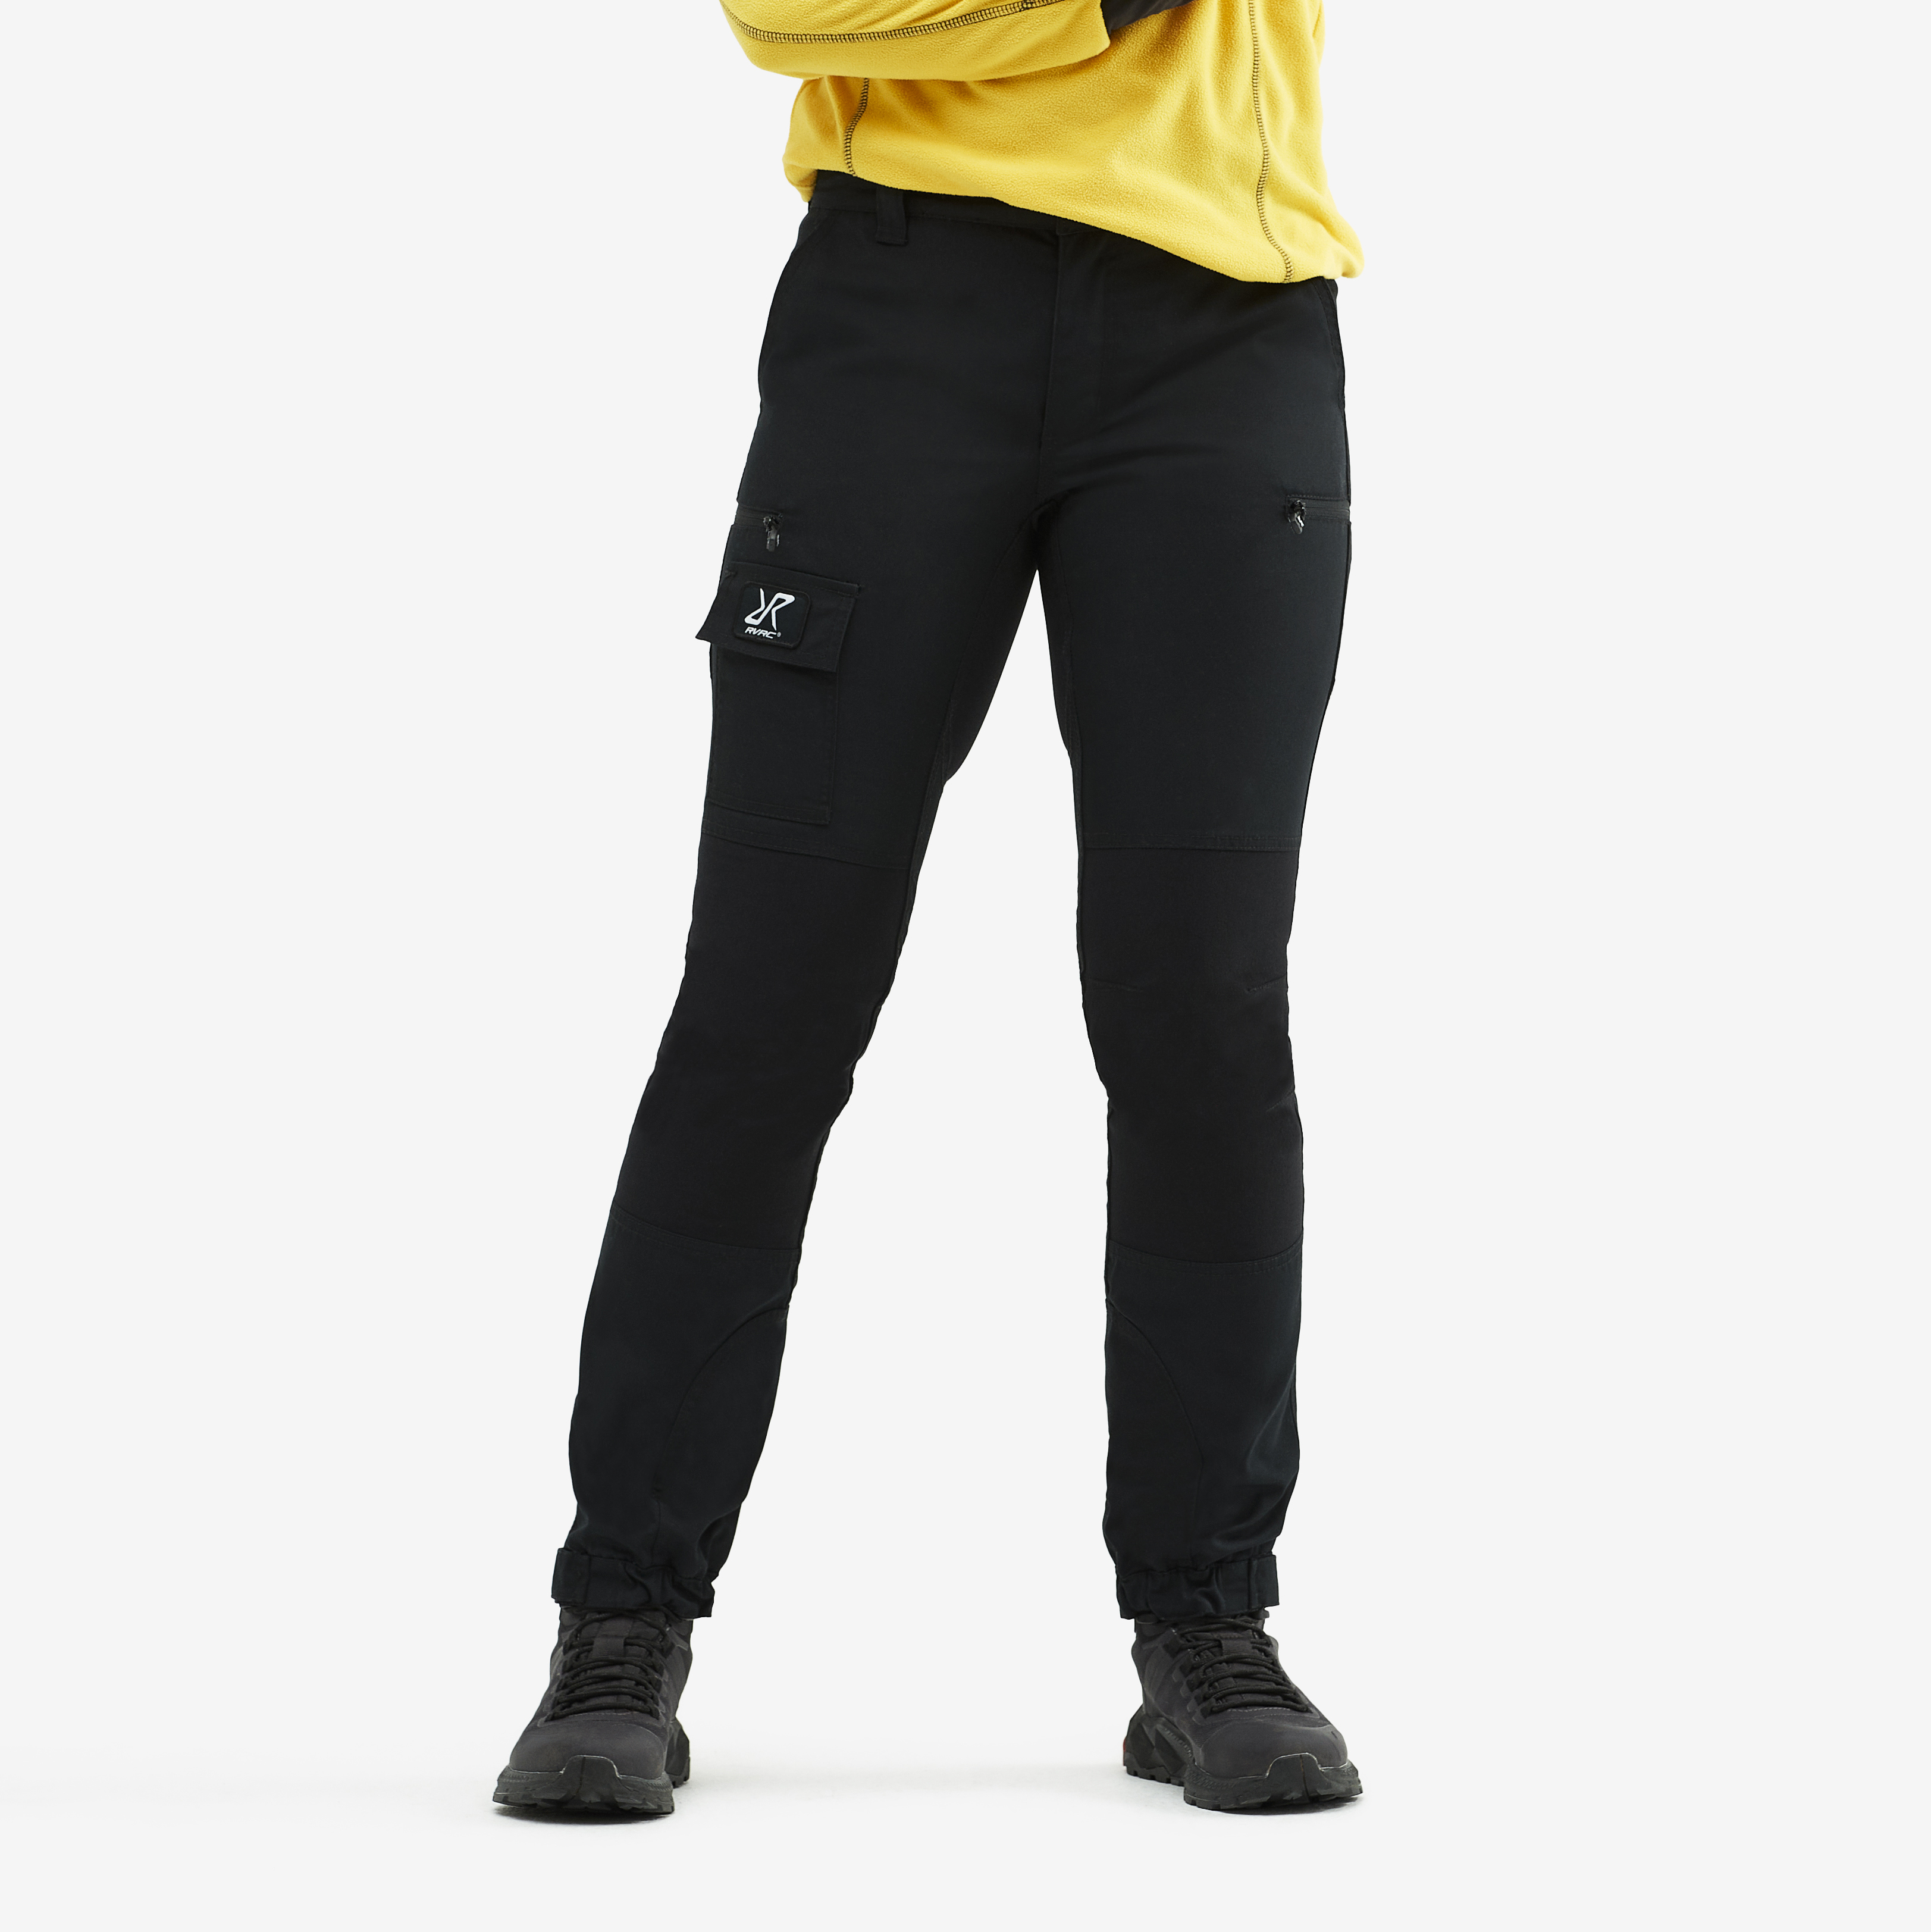 Nordwand Short outdoorové kalhoty pro ženy v černé barvě